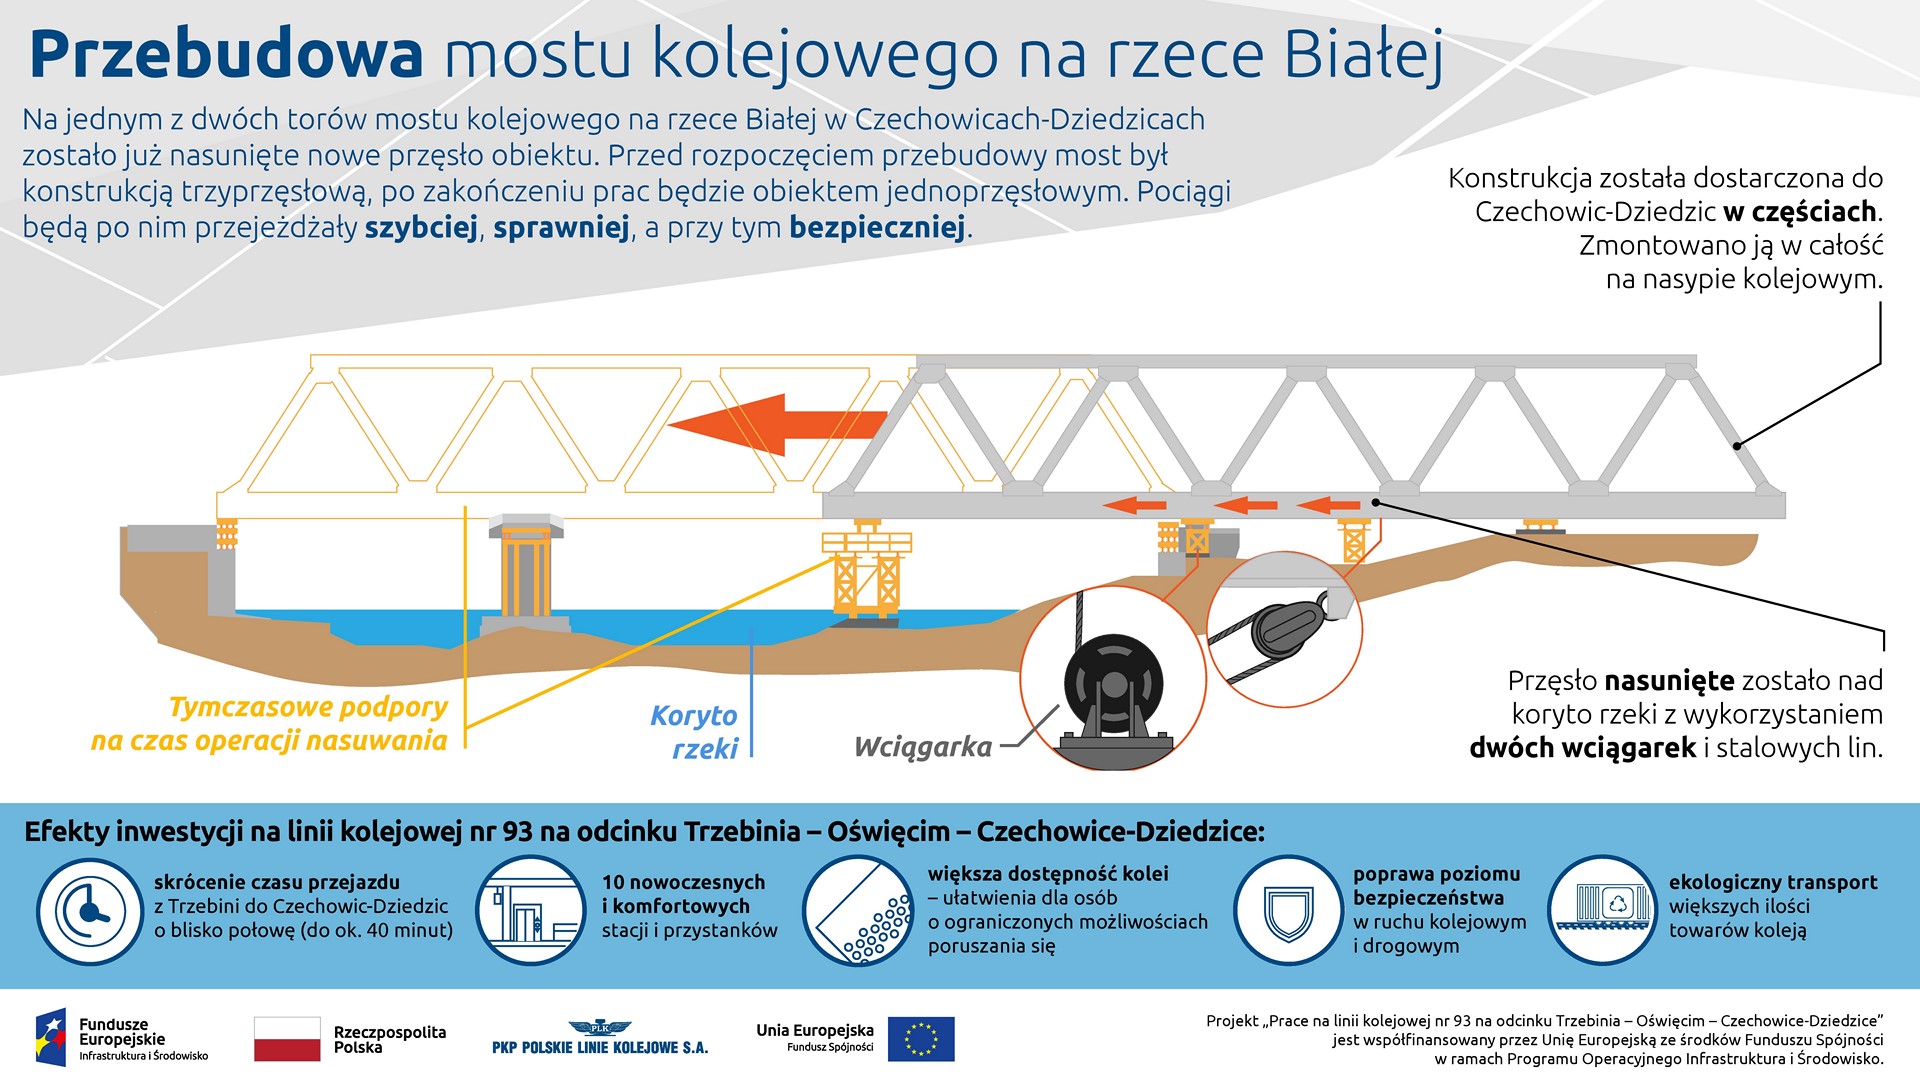 Infografika informuje o tym w jaki sposób nasunięty został most na rzece Białej.